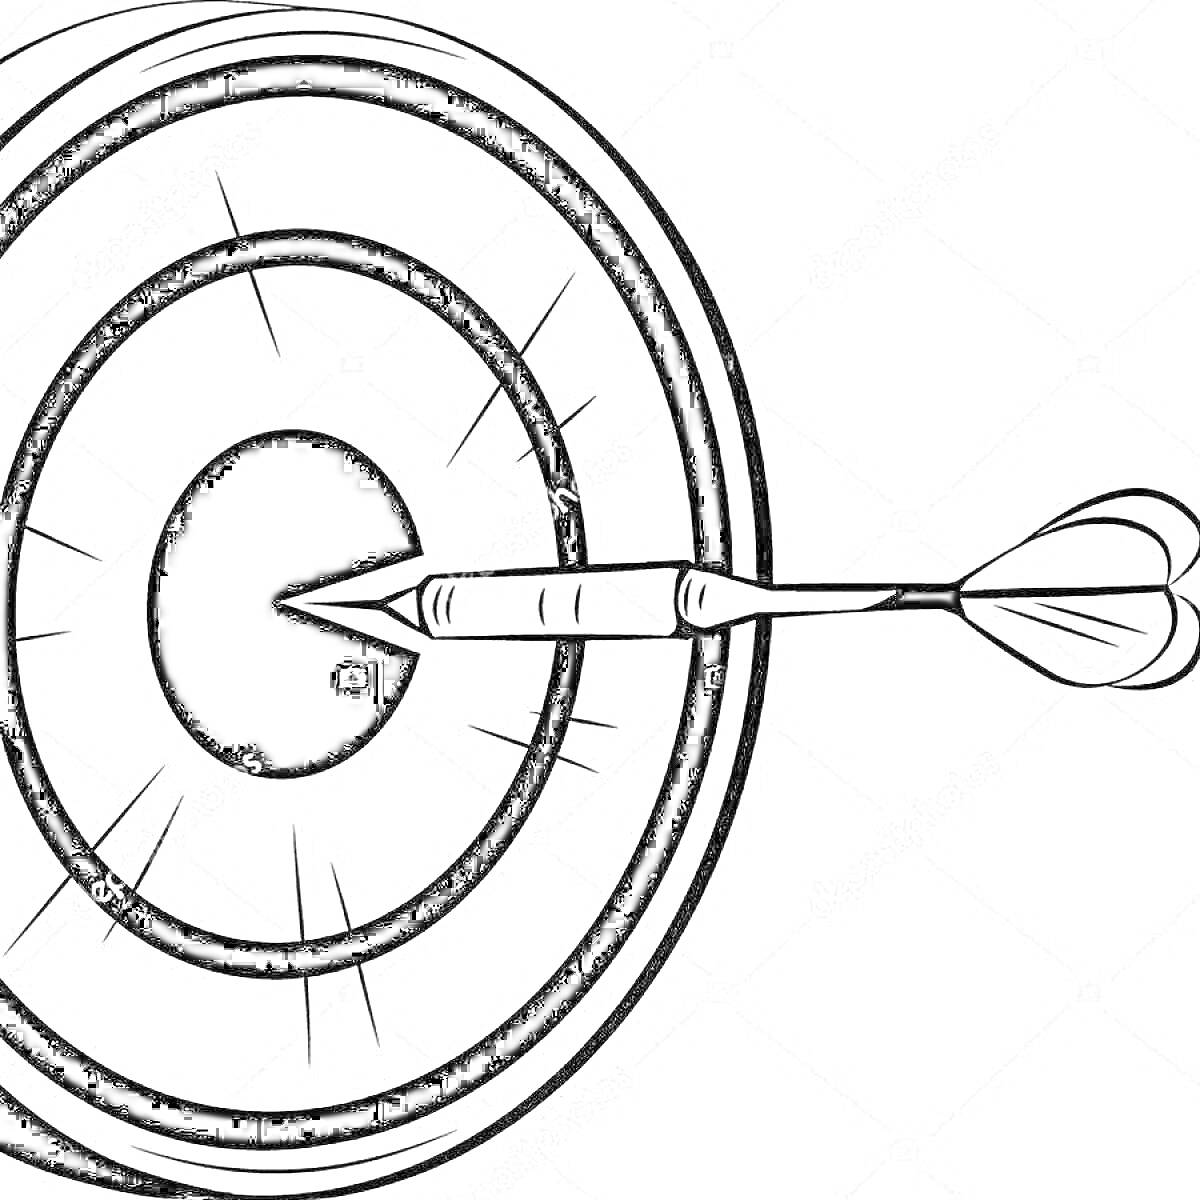 мишень с тремя кольцами и стрелой в центре